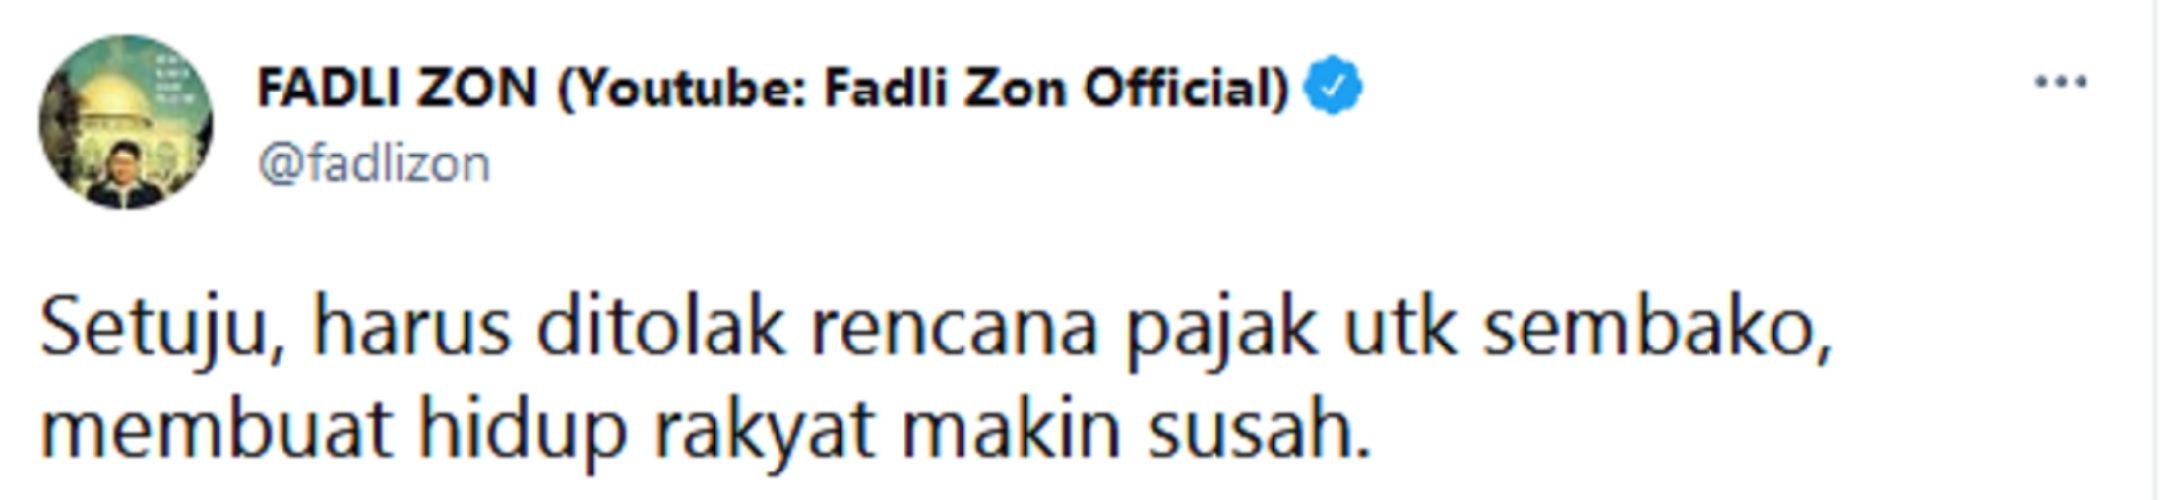 Soal Pajak Sembako, Fadli Zon: Setuju Harus Ditolak, Membuat Hidup Rakyat Makin Susah